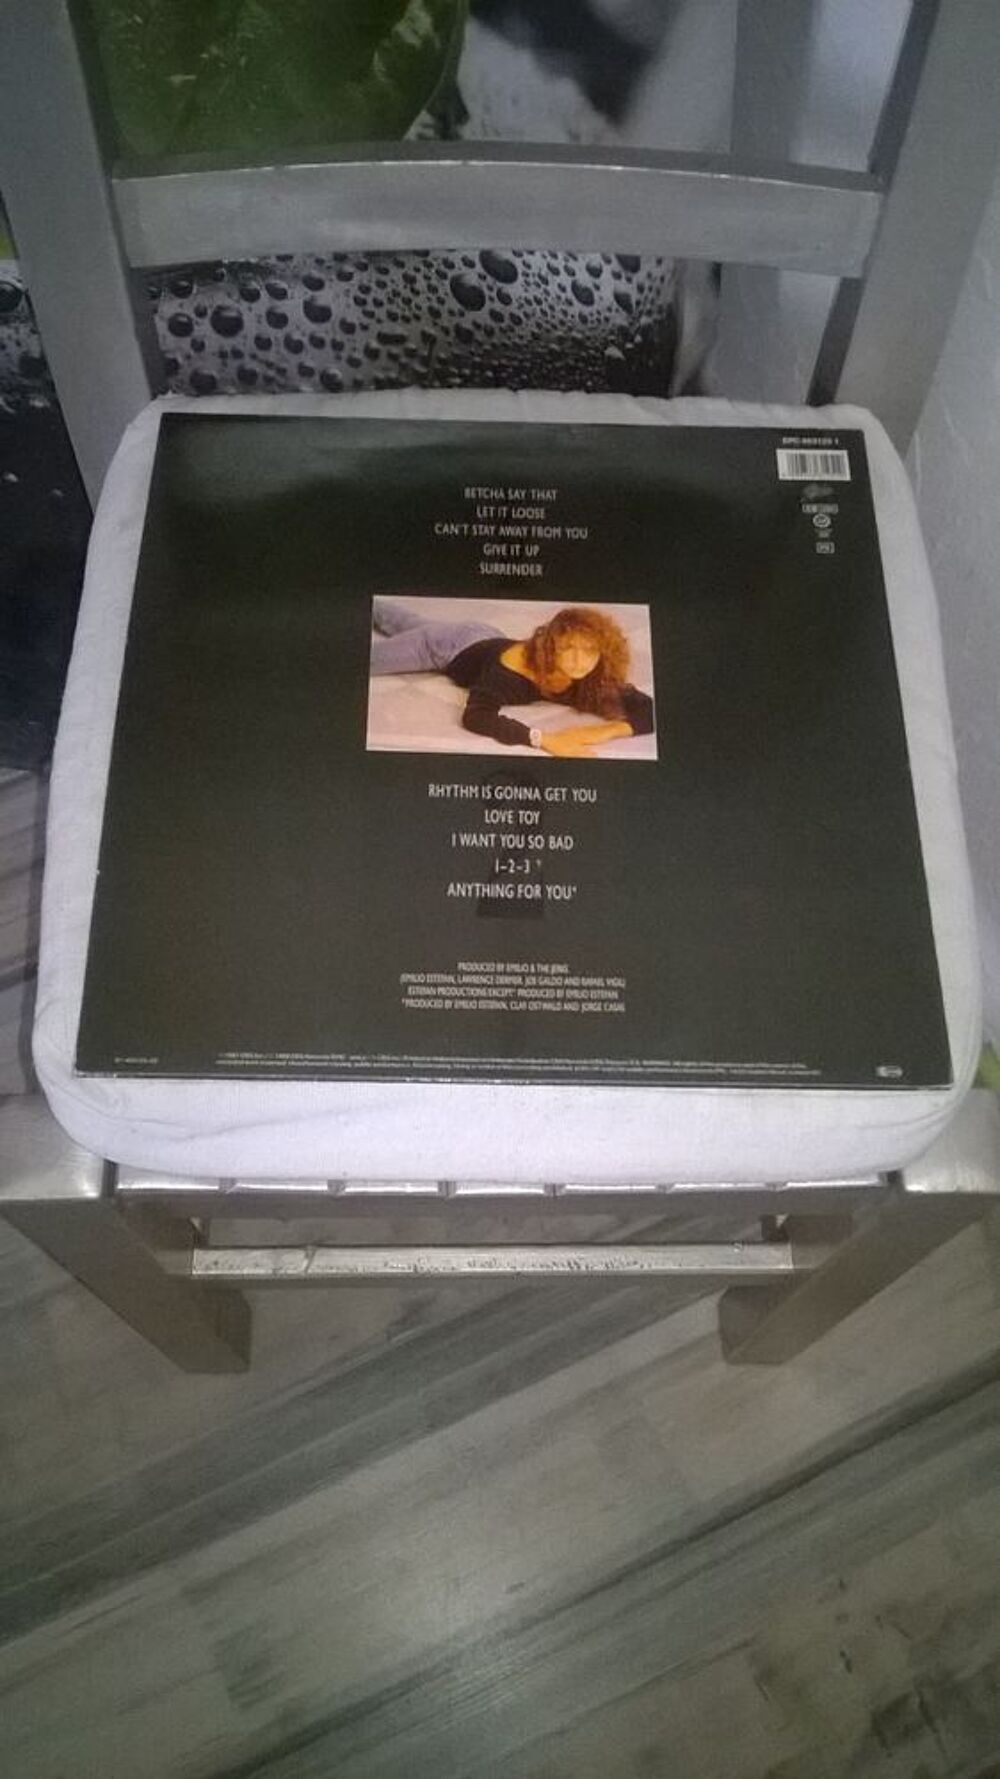 Vinyle Gloria Estefan 
Anything for you
1987
Excellent et CD et vinyles